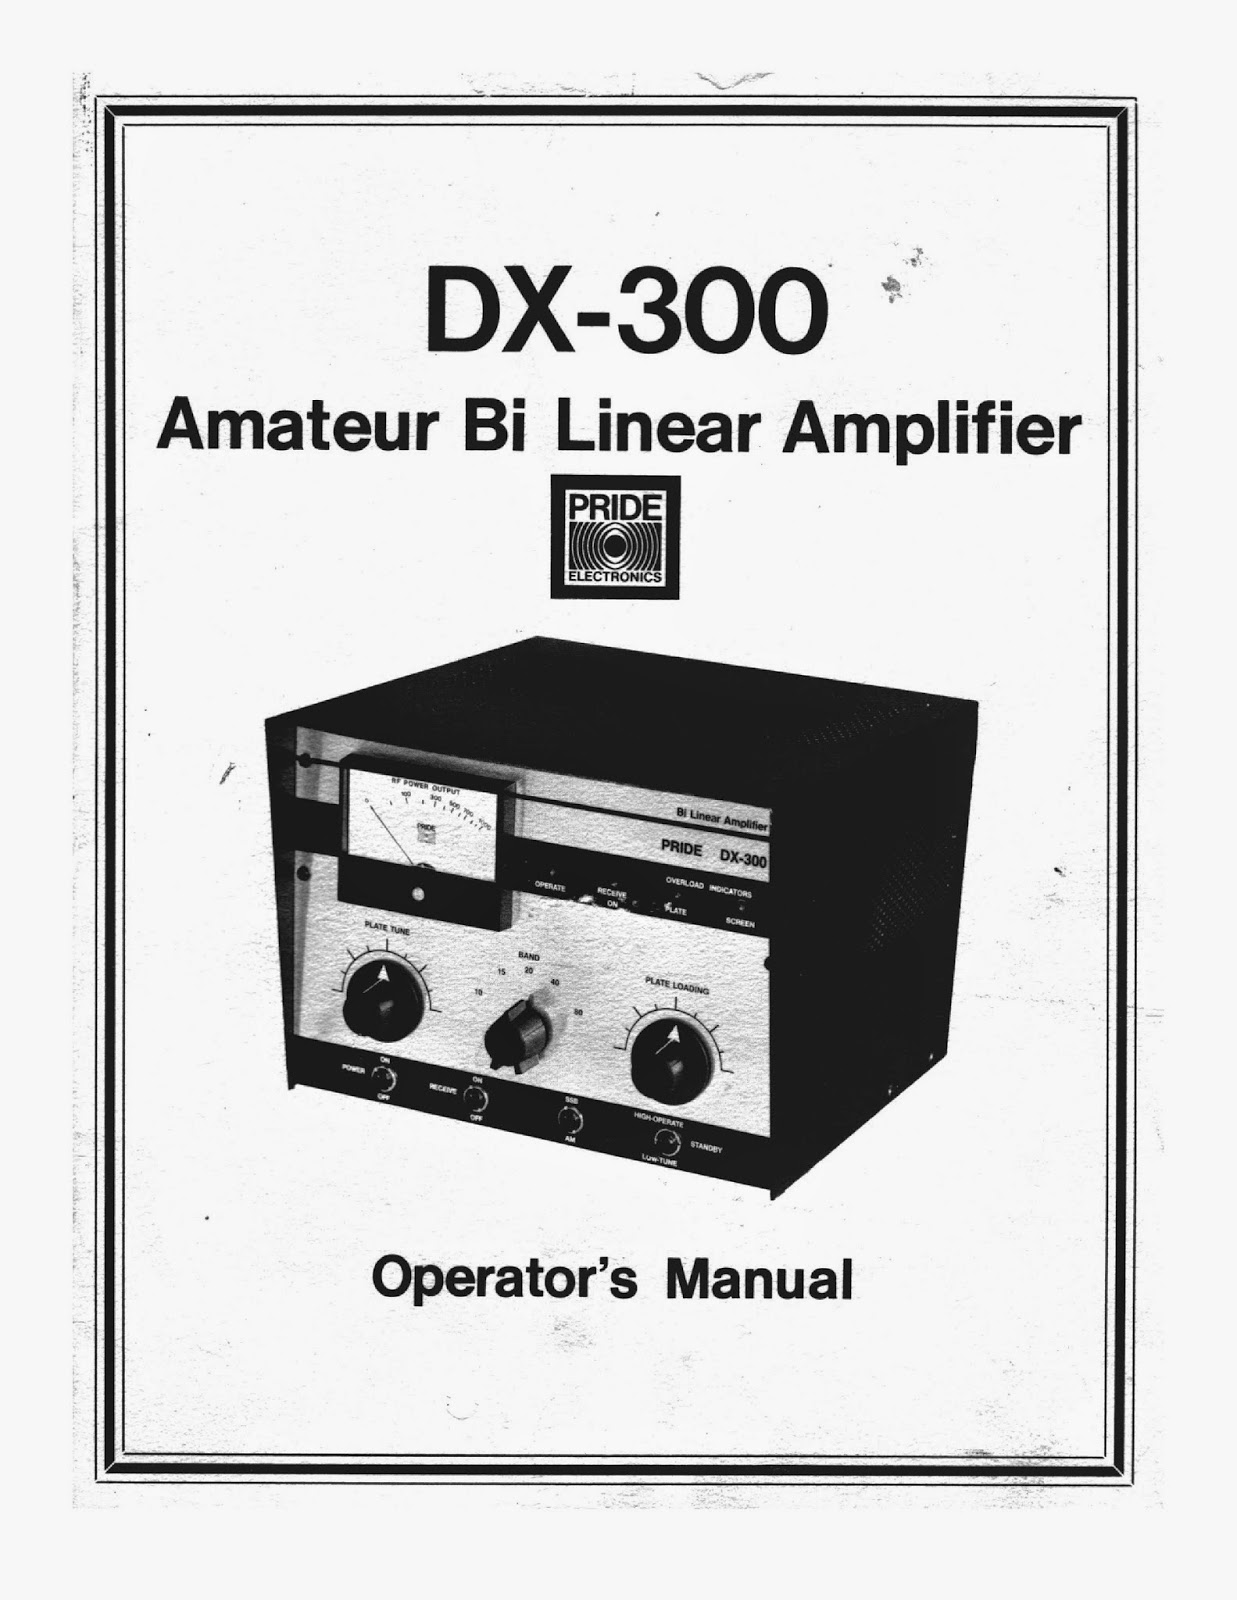 Amateur Linear Amplifier 100